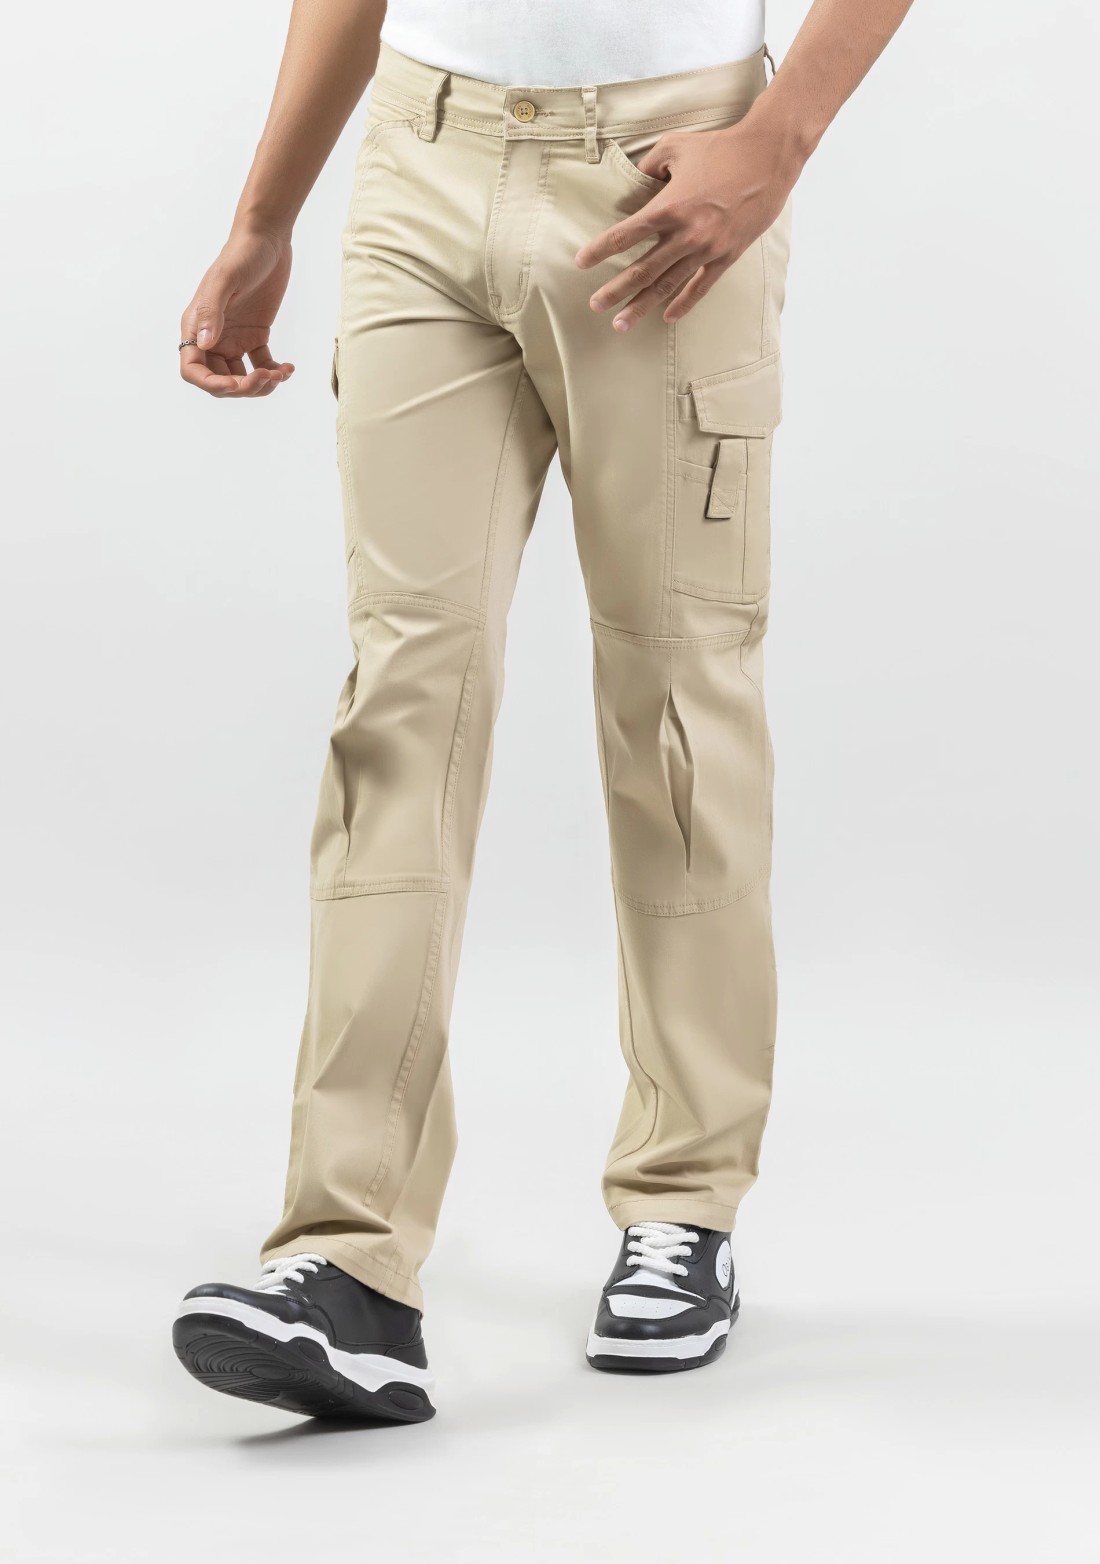 Stretchable Trousers - Buy Stretchable Trousers online in India